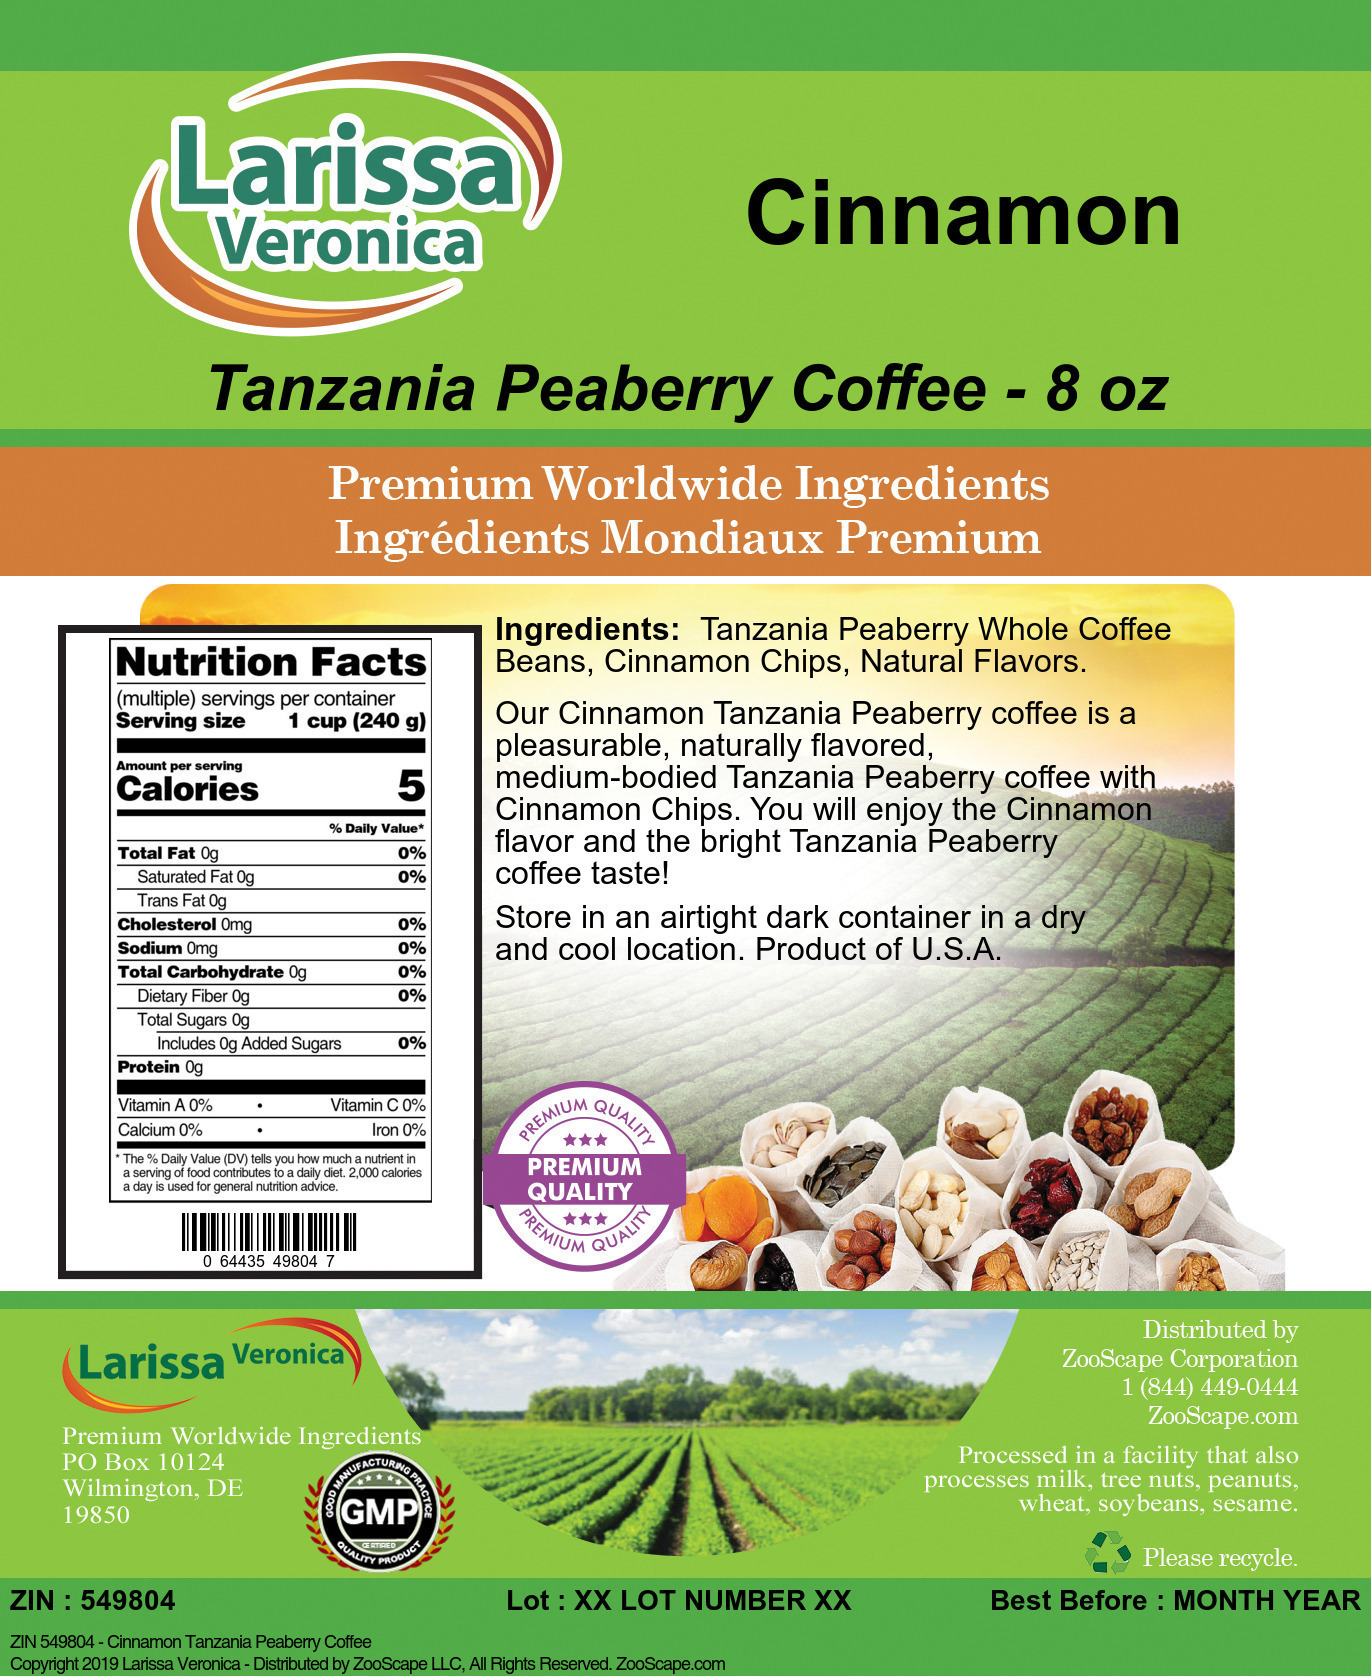 Cinnamon Tanzania Peaberry Coffee - Label